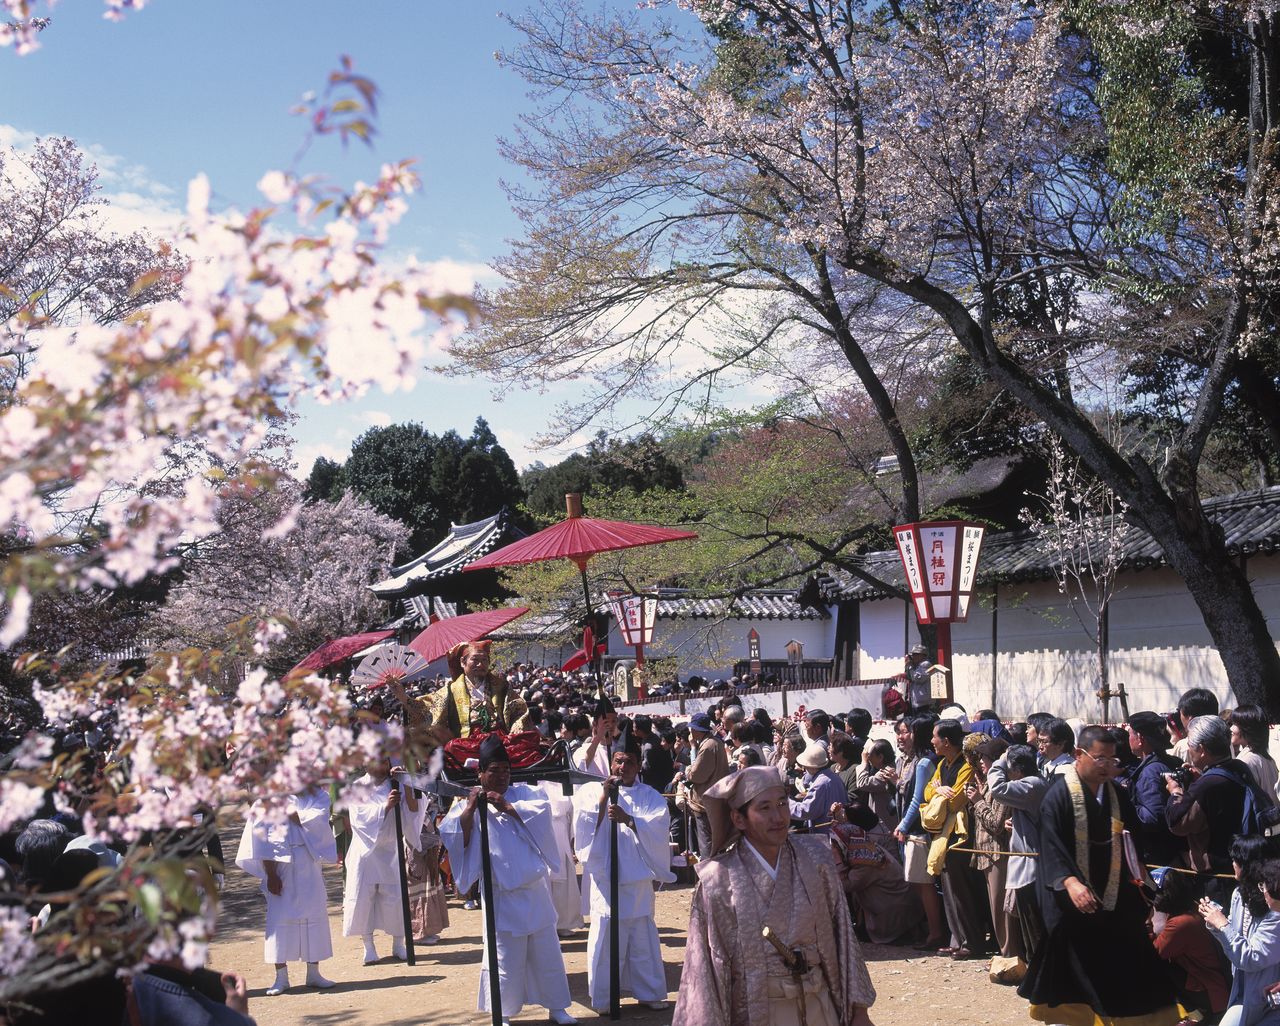 أعاد موكب أزهار الكرز في المعبد البوذي دايغوجي إحياء المناسبة عندما زرع تويوتومي هيديوشي المئات من أشجار الكرز ودعا الإقطاع دايميو وحاشيتهم، البالغ عددهم حوالي 1300 شخص، إلى كيوتو. ألتقطت الصورة عام 1997. جيجي برس.